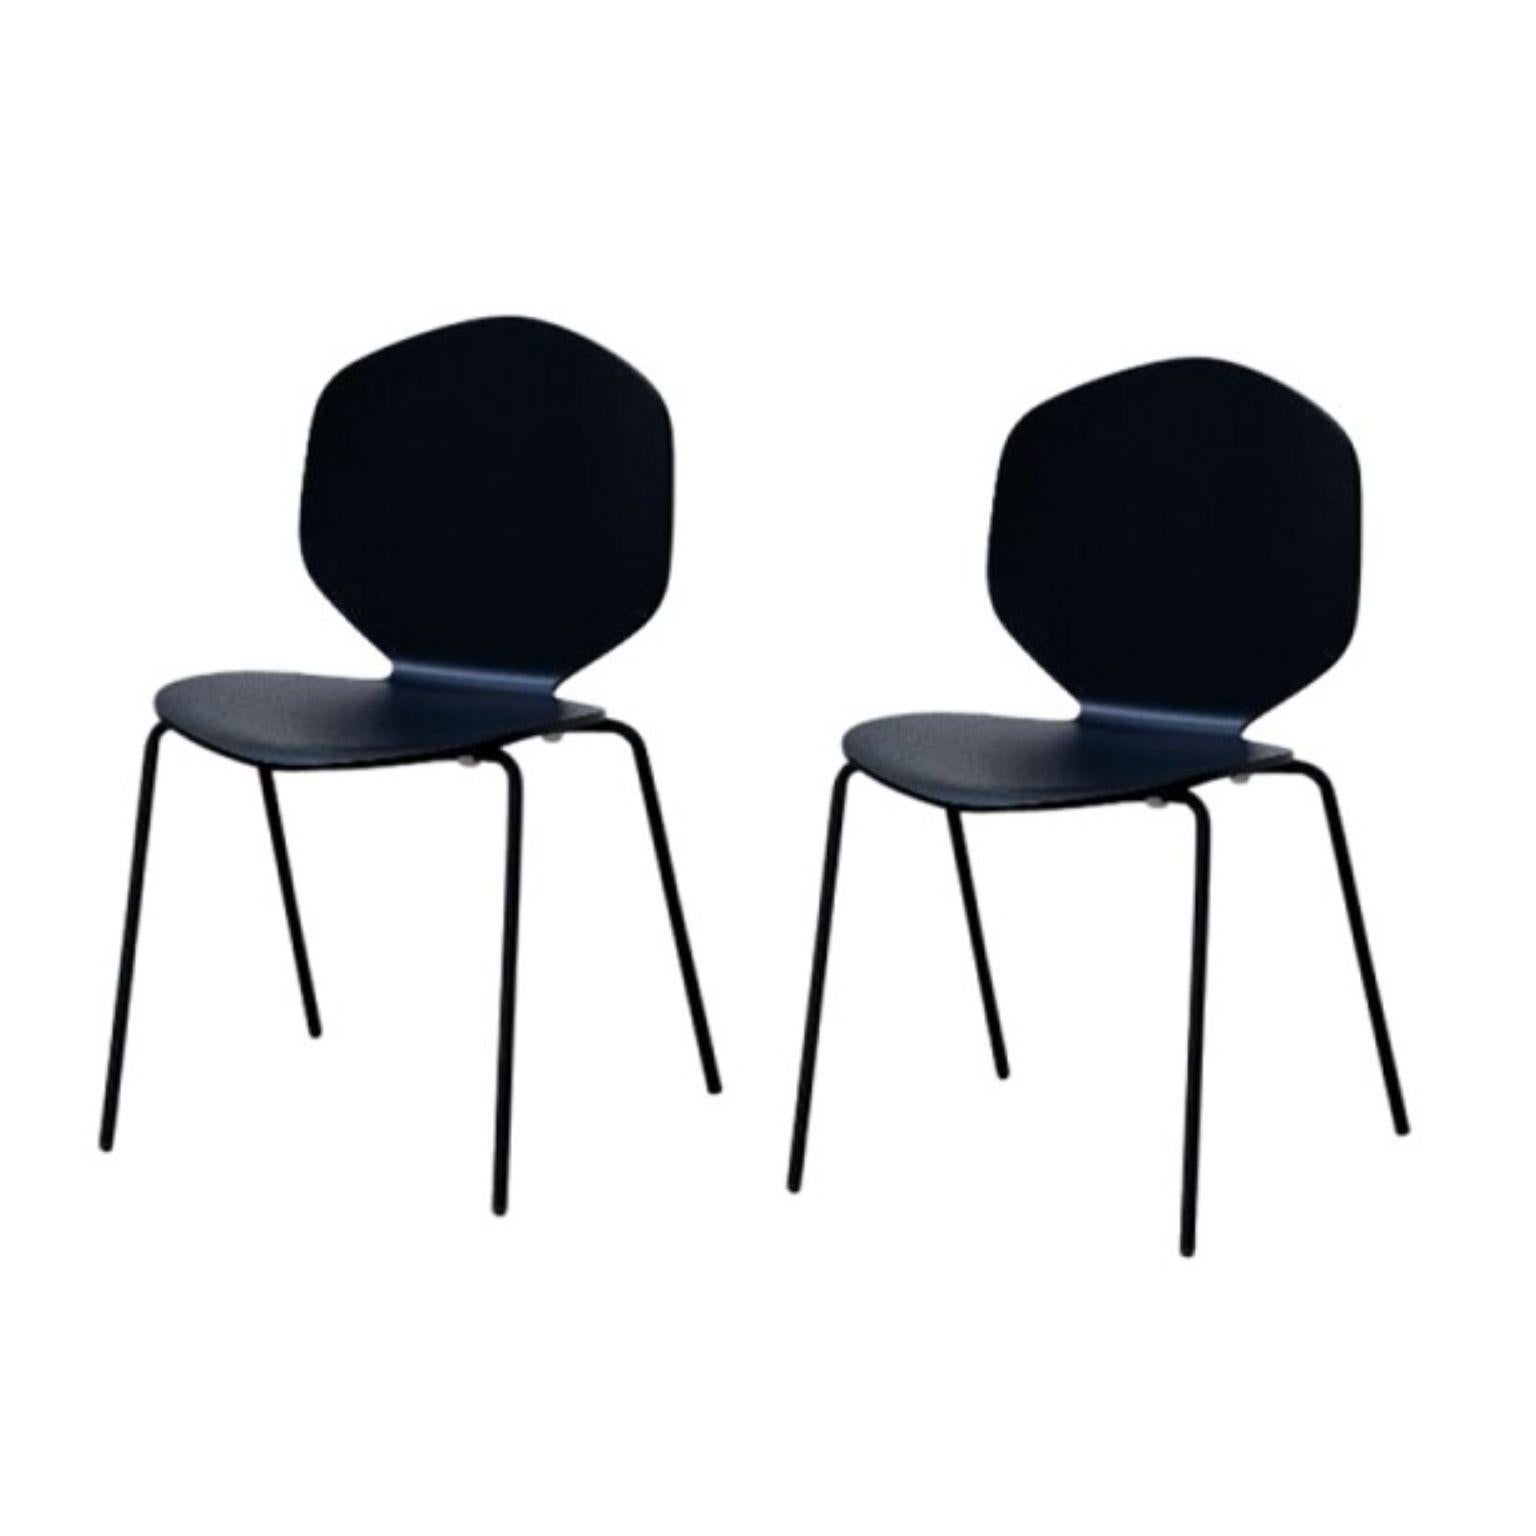 Ensemble de 2 chaises LouLou par Shin Azumi
Nature : base en métal laqué noir ou blanc ou chromé, assise et dossier en placage de chêne naturel ou teinté noir ou blanc. 
Technique : Métal laqué, bois naturel et teinté. 
Dimensions : D 45 x L 47 x H